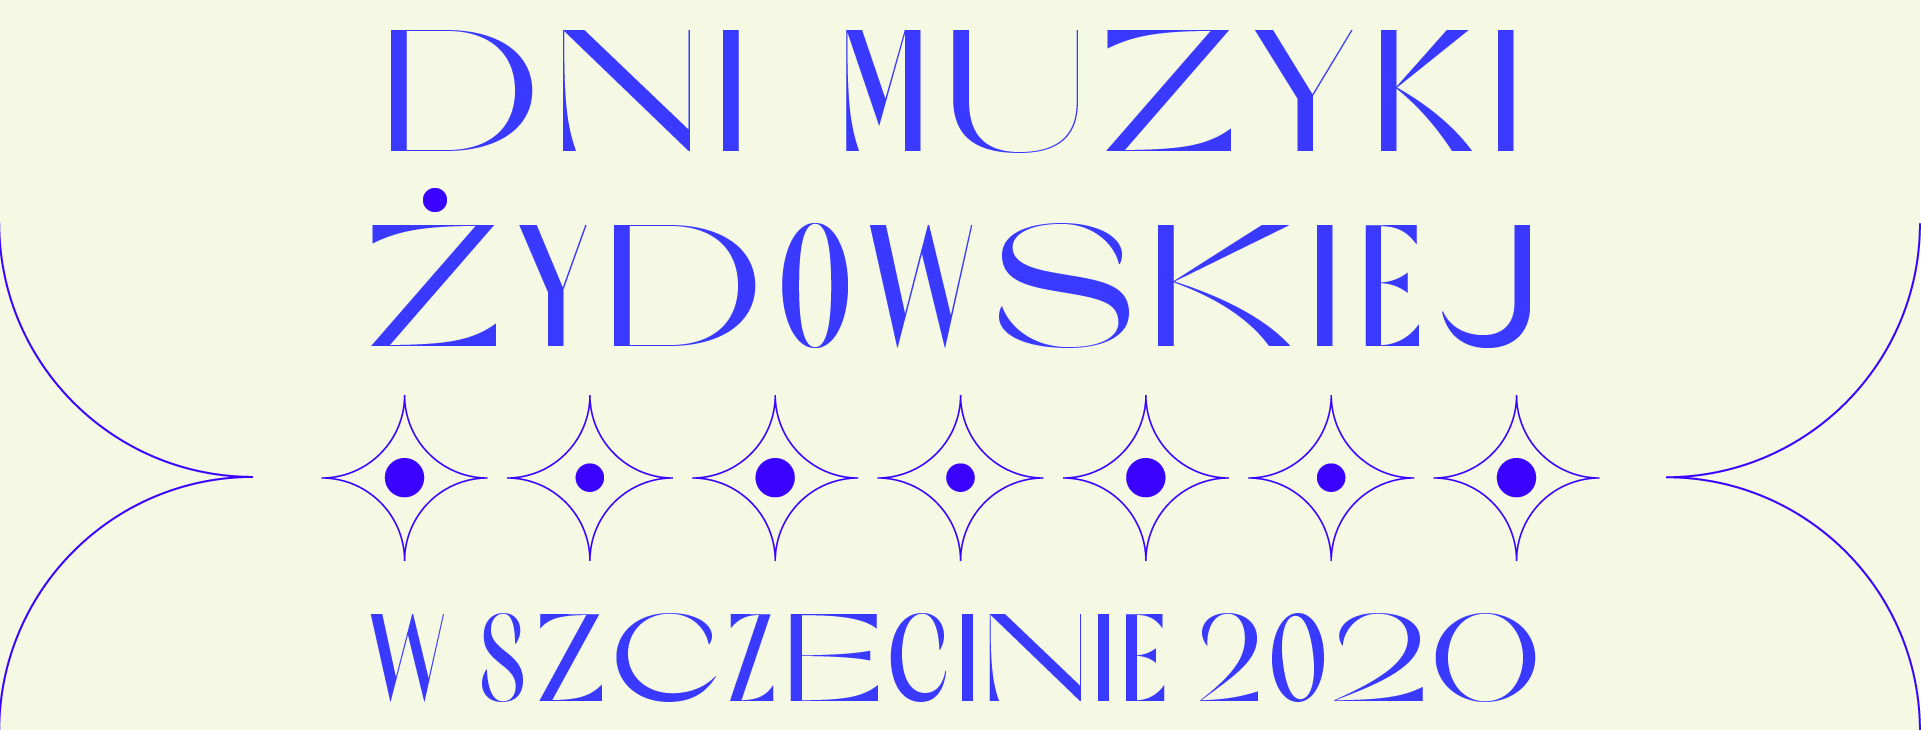 Dni Muzyki Żydowskiej w Szczecinie 2020 ONLINE